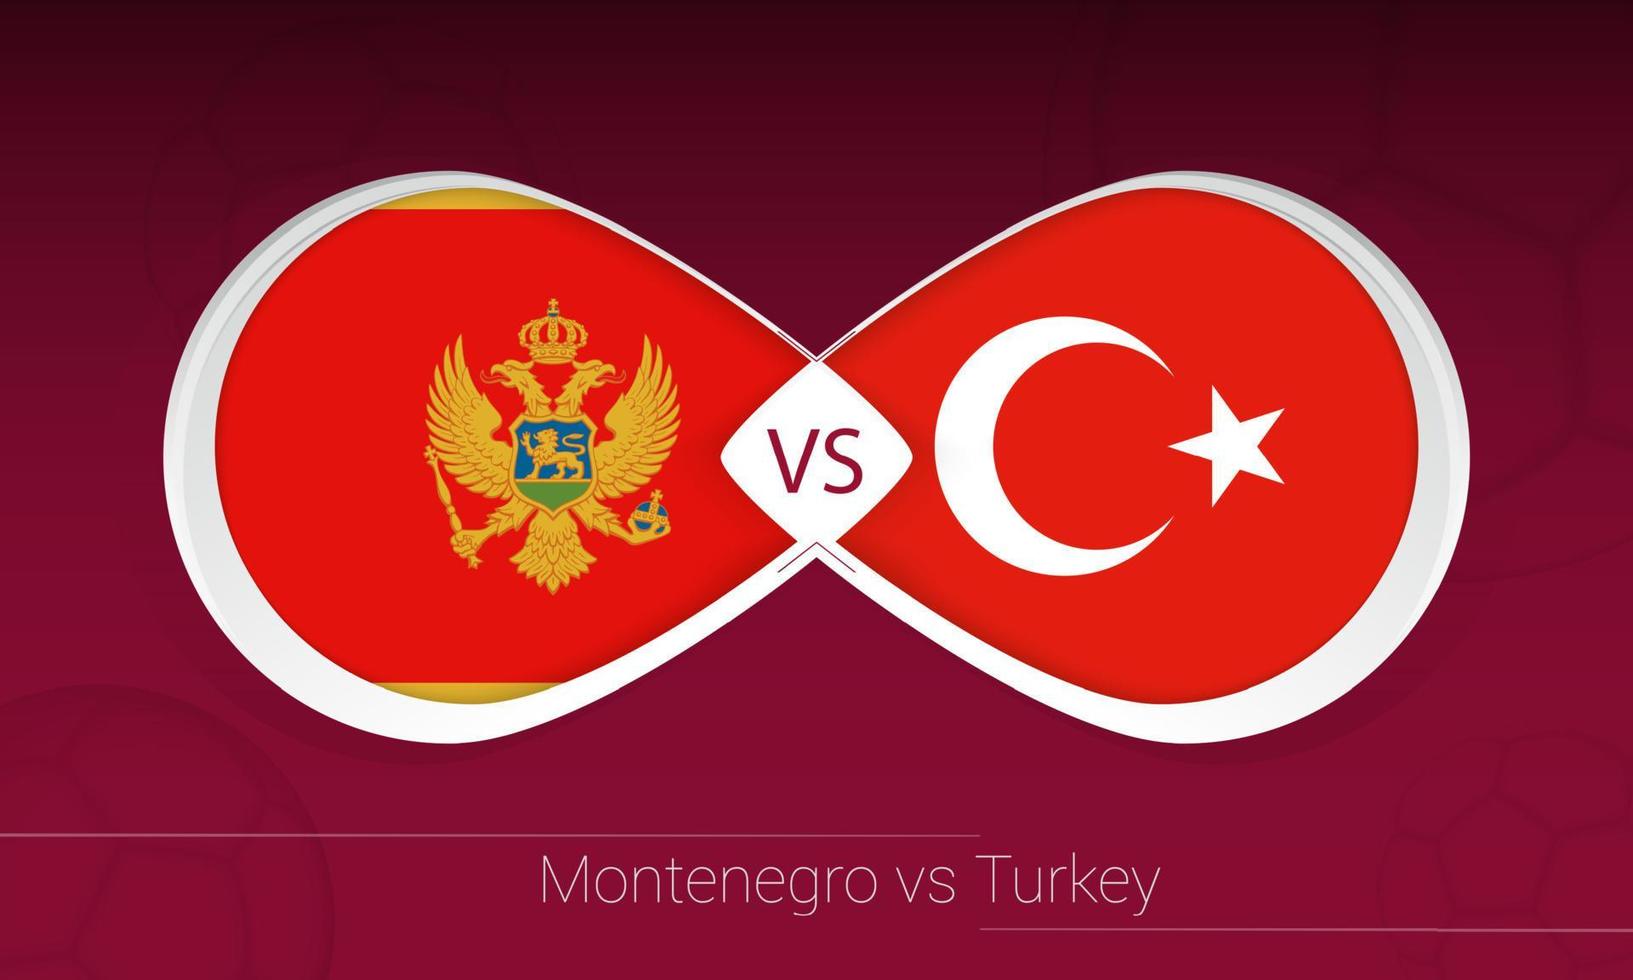 montenegro gegen die türkei im fußballwettbewerb, gruppe g. gegen Symbol auf Fußballhintergrund. vektor